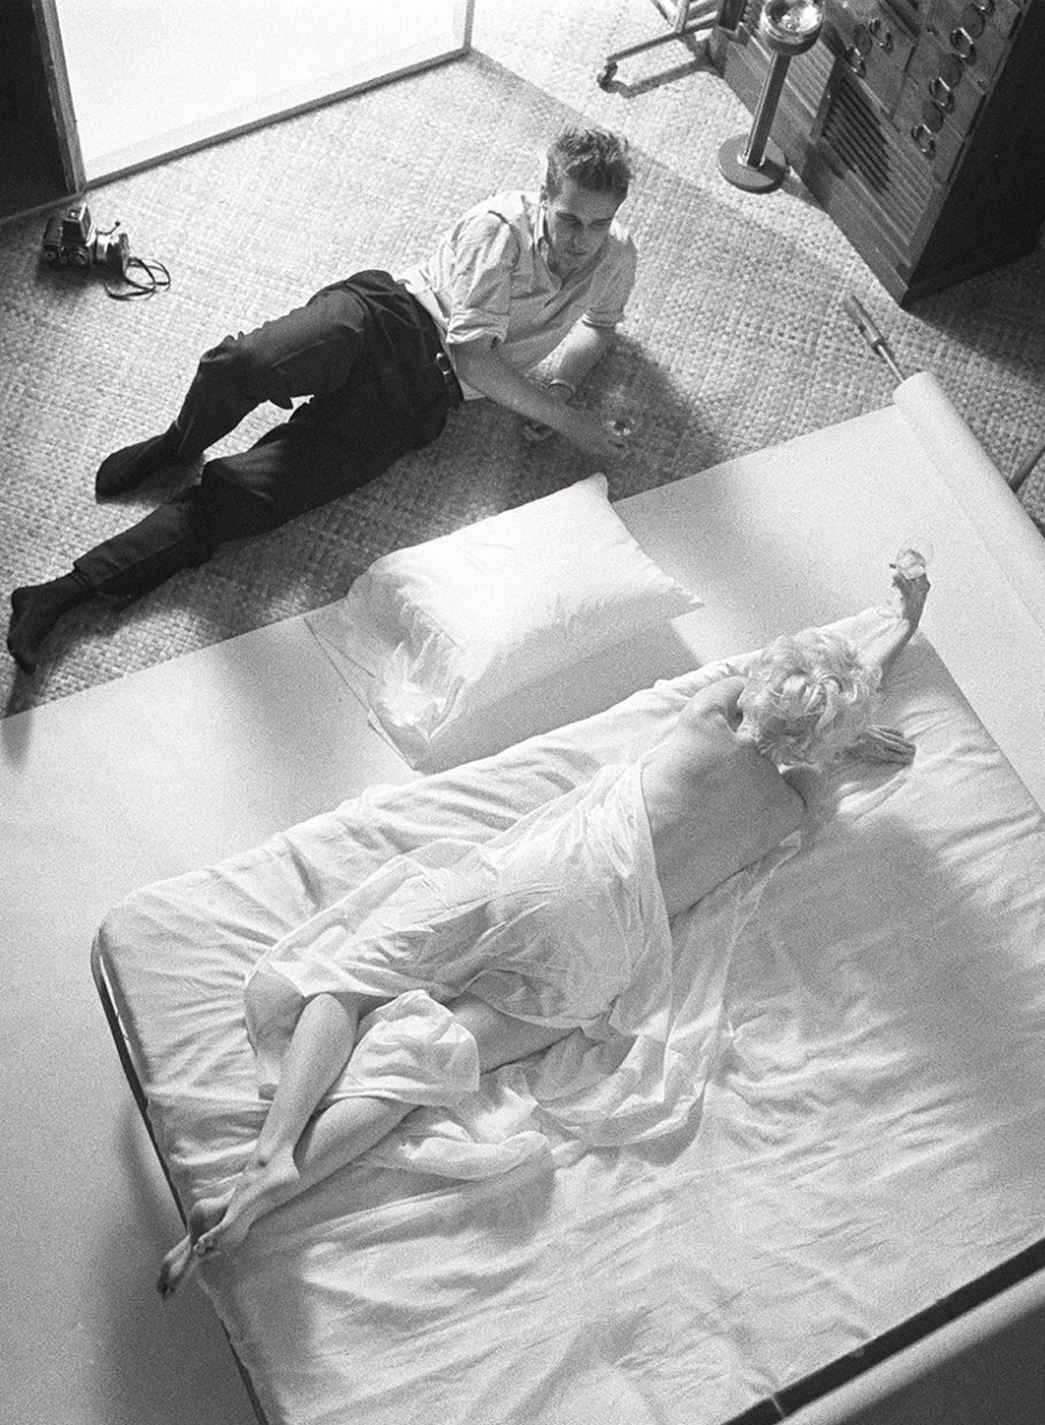 La intimidad de Marilyn Monroe con el fotógrafo Douglas Kirkland en una tarde-noche de noviembre de 1961 (Douglas Kirkland - Heritage Auctions - Christie's)